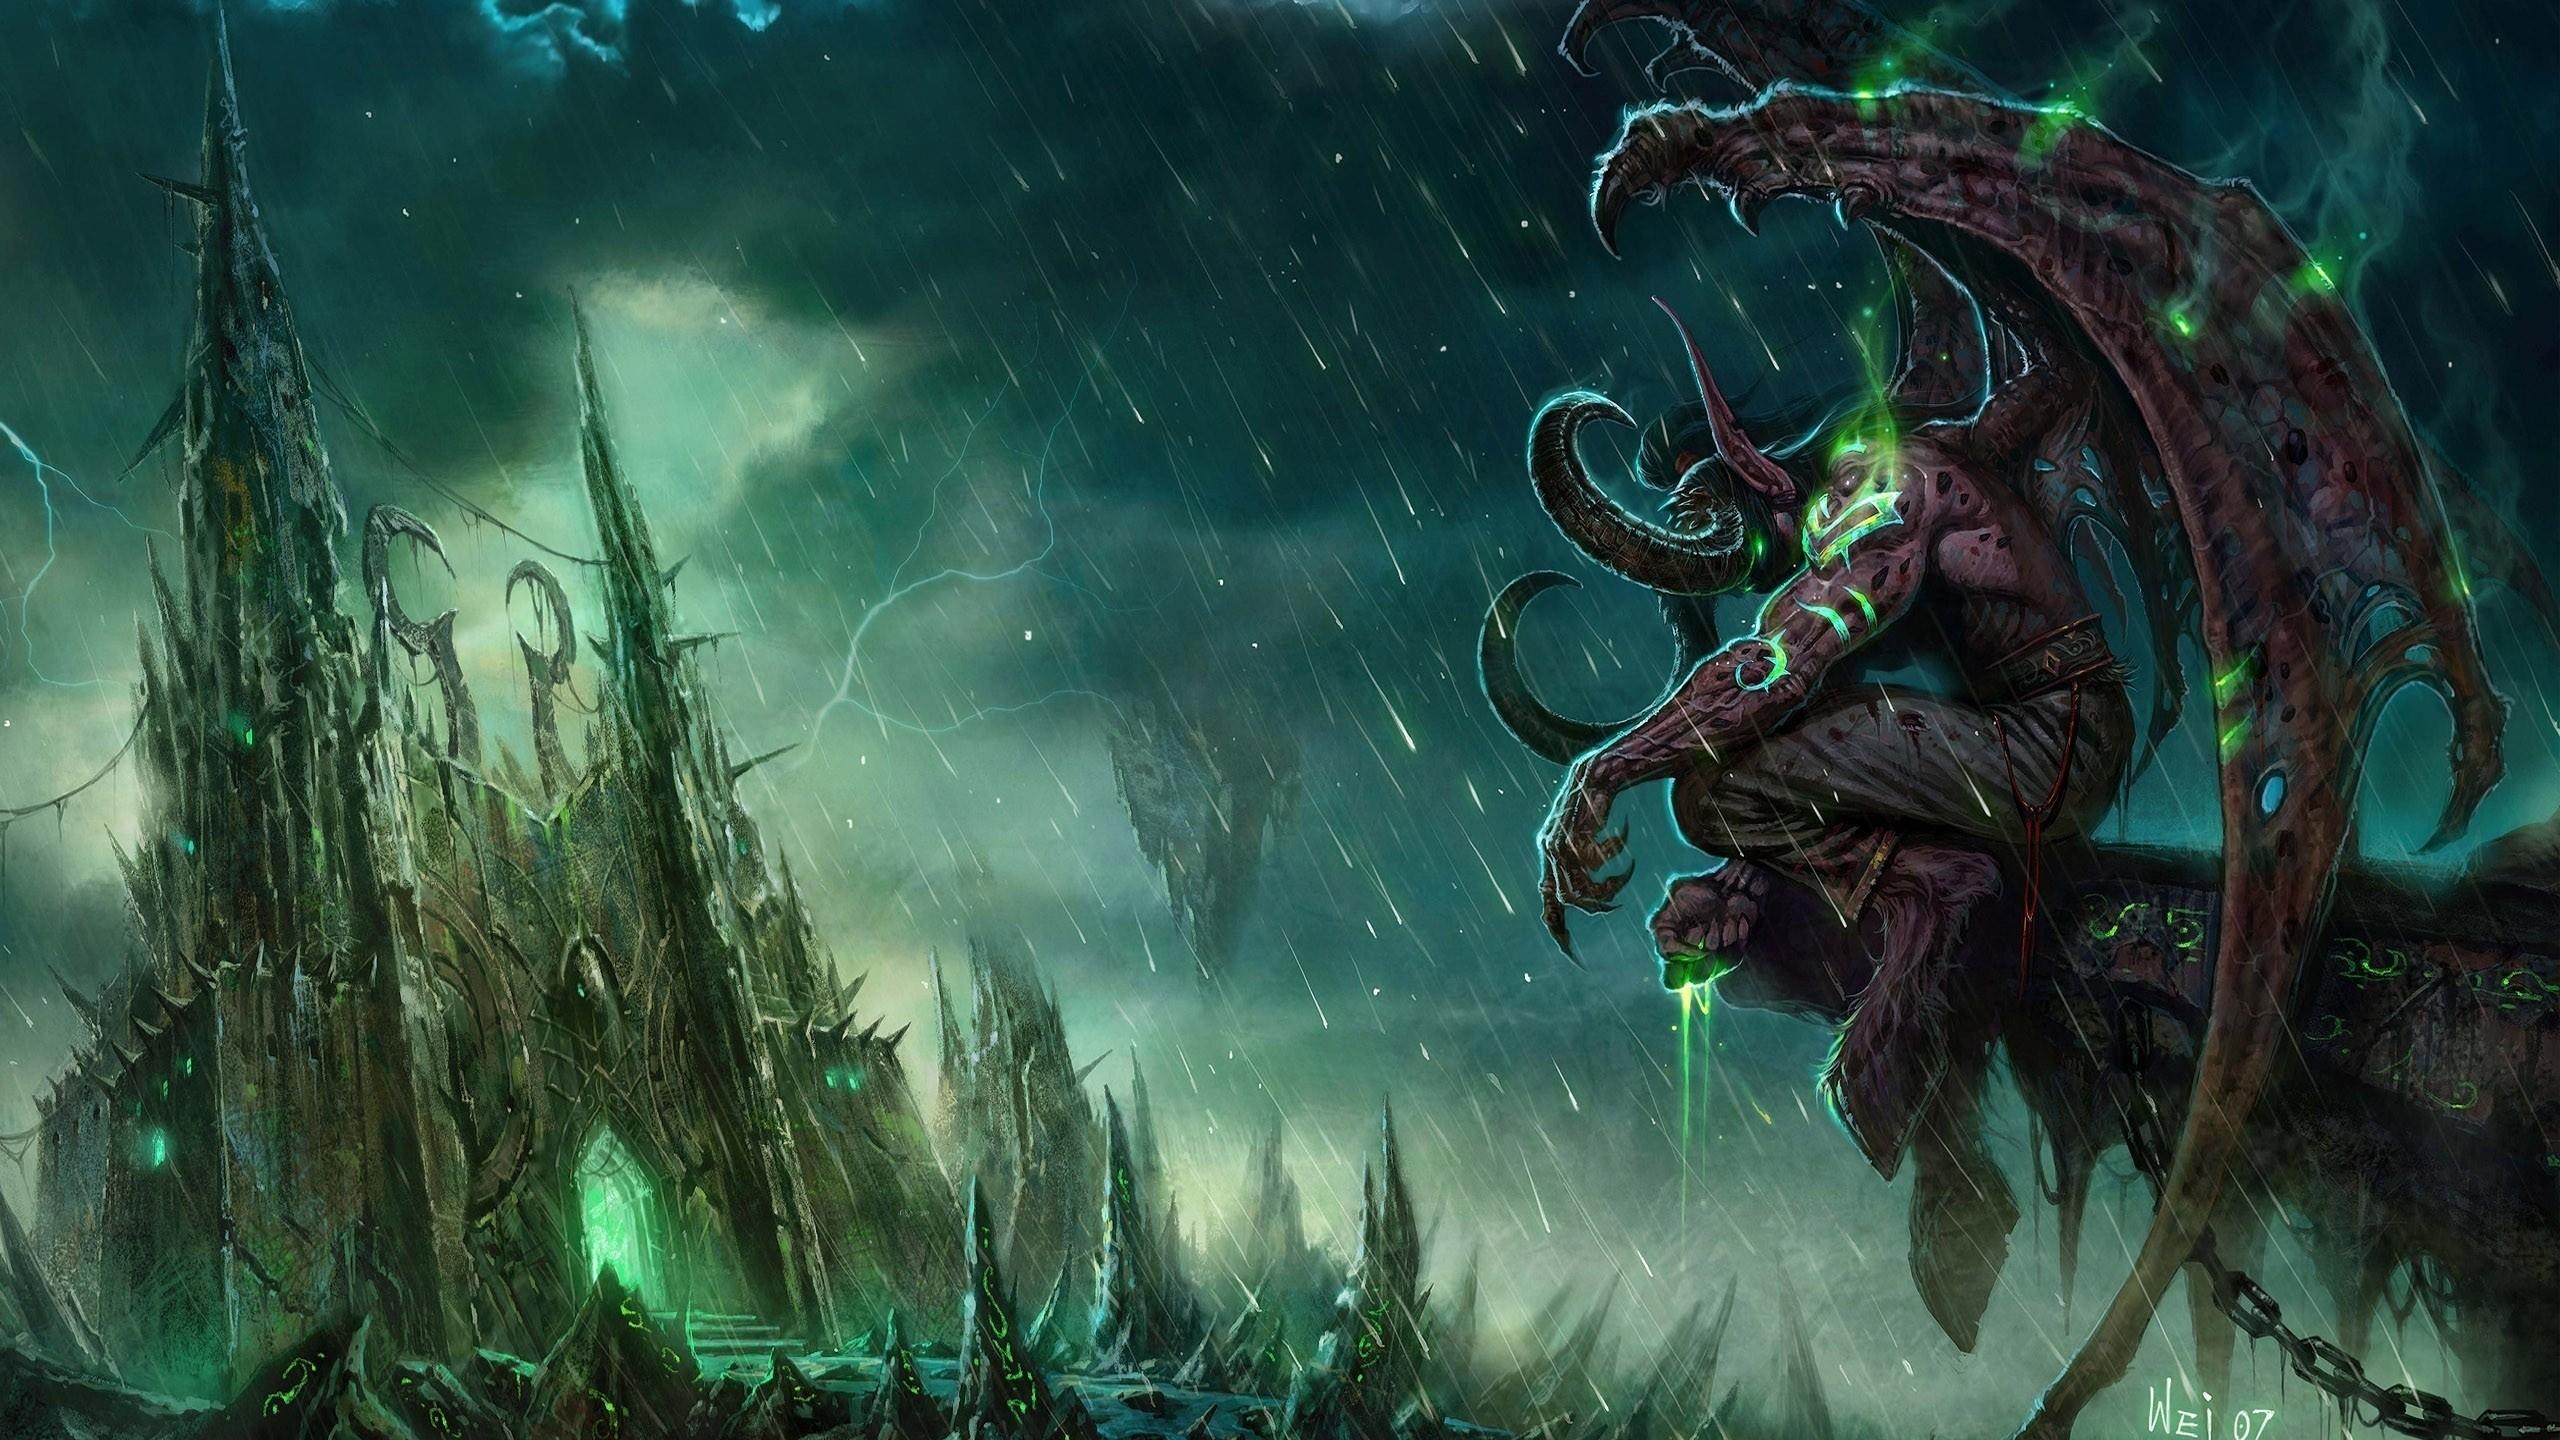 #Illidan Stormrage, #World of Warcraft: The Burning